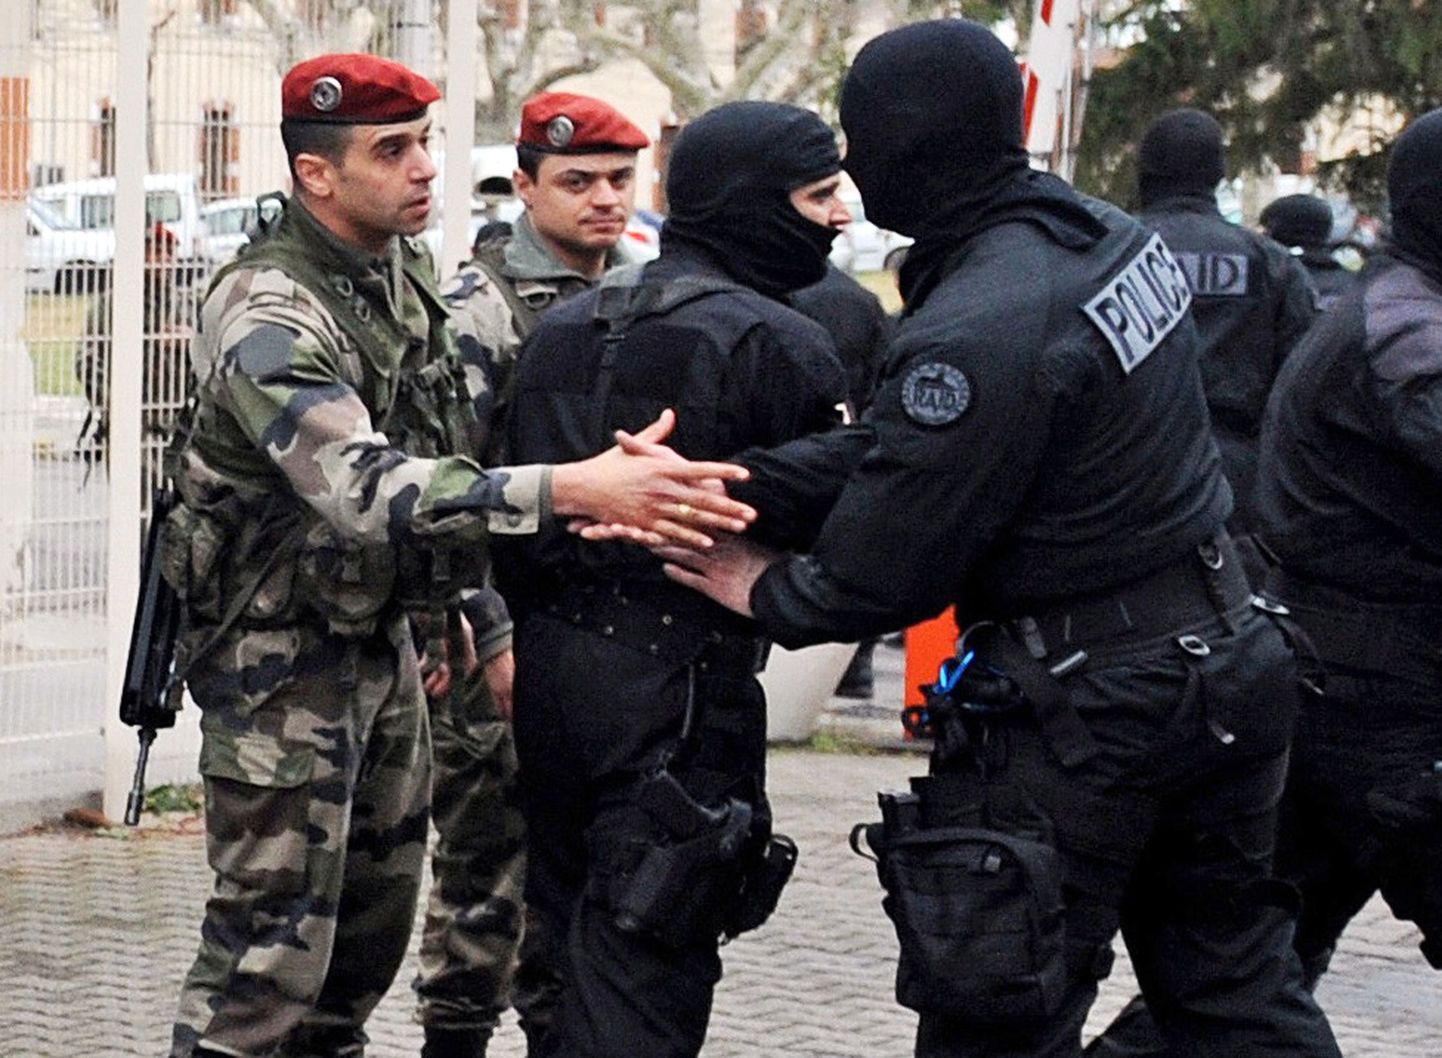 Prantsuse politsei ja sõjaväe eriüksuslased pärast operatsiooni üksteisel kätt surumas.